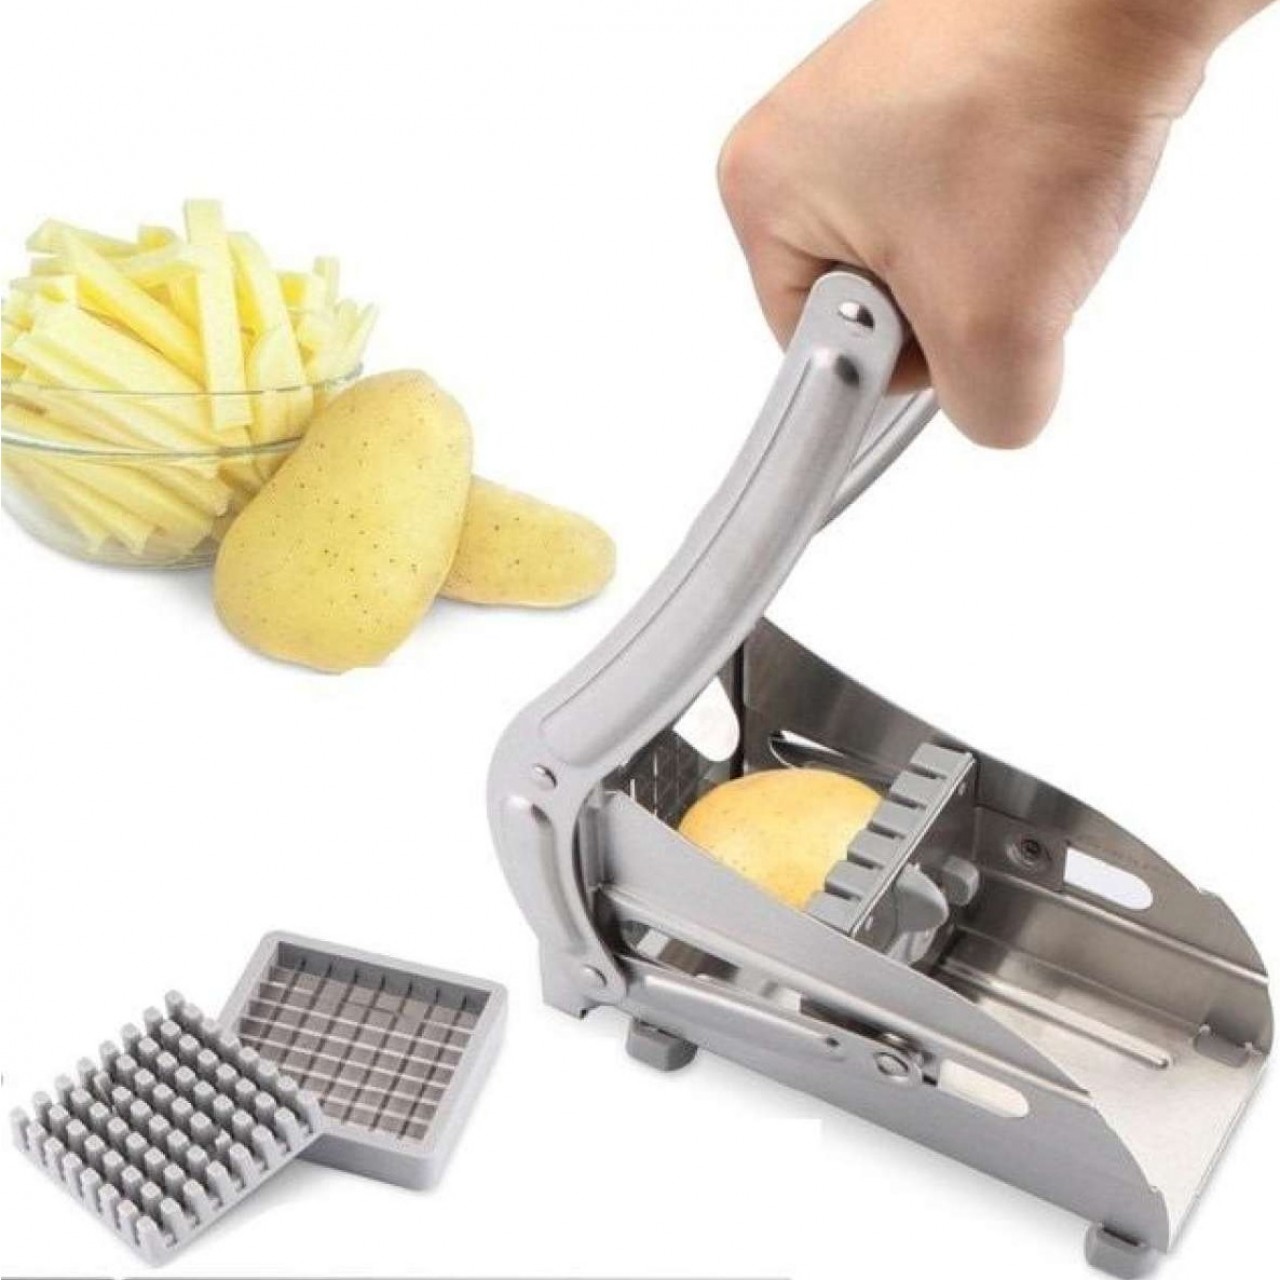 Effective Stainless Steel Potato Cutter & Vegitable Slicer